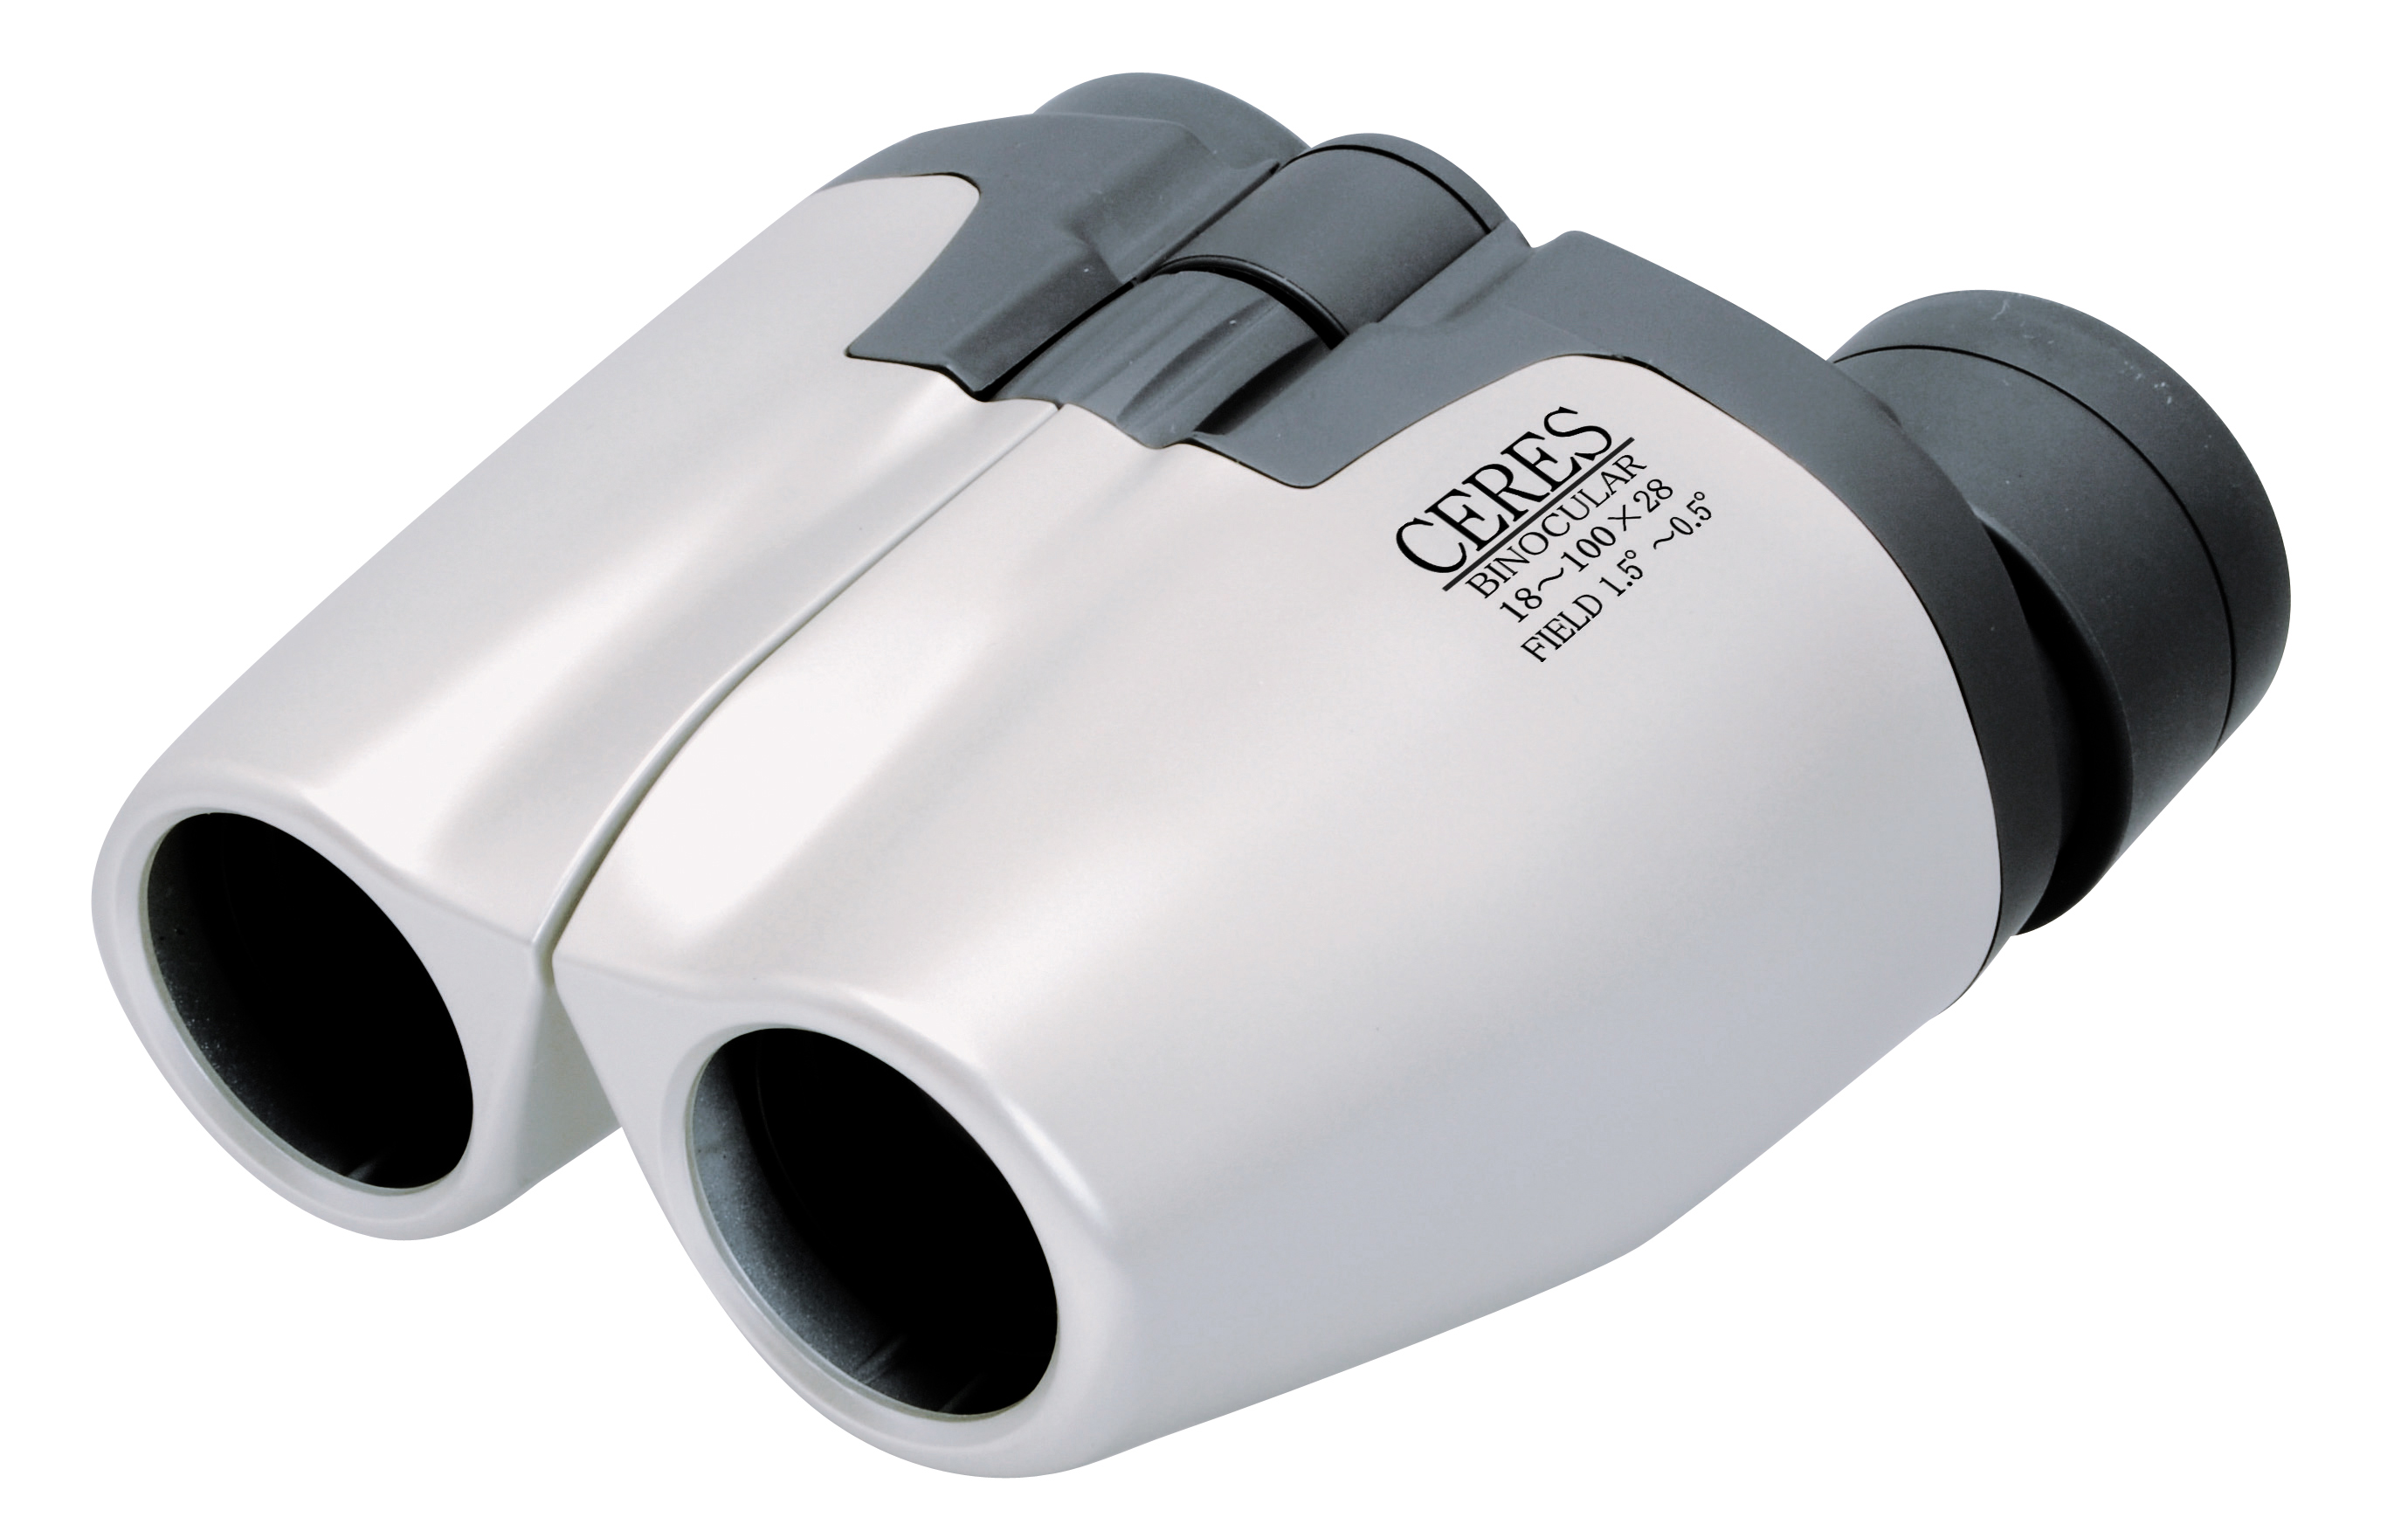 1054円 超爆安 Kenko 単眼鏡 CERES-M 7×18 7倍 18口径 コンパクト設計 重さ35g ケース ストラップ付属 シルバー CRM01